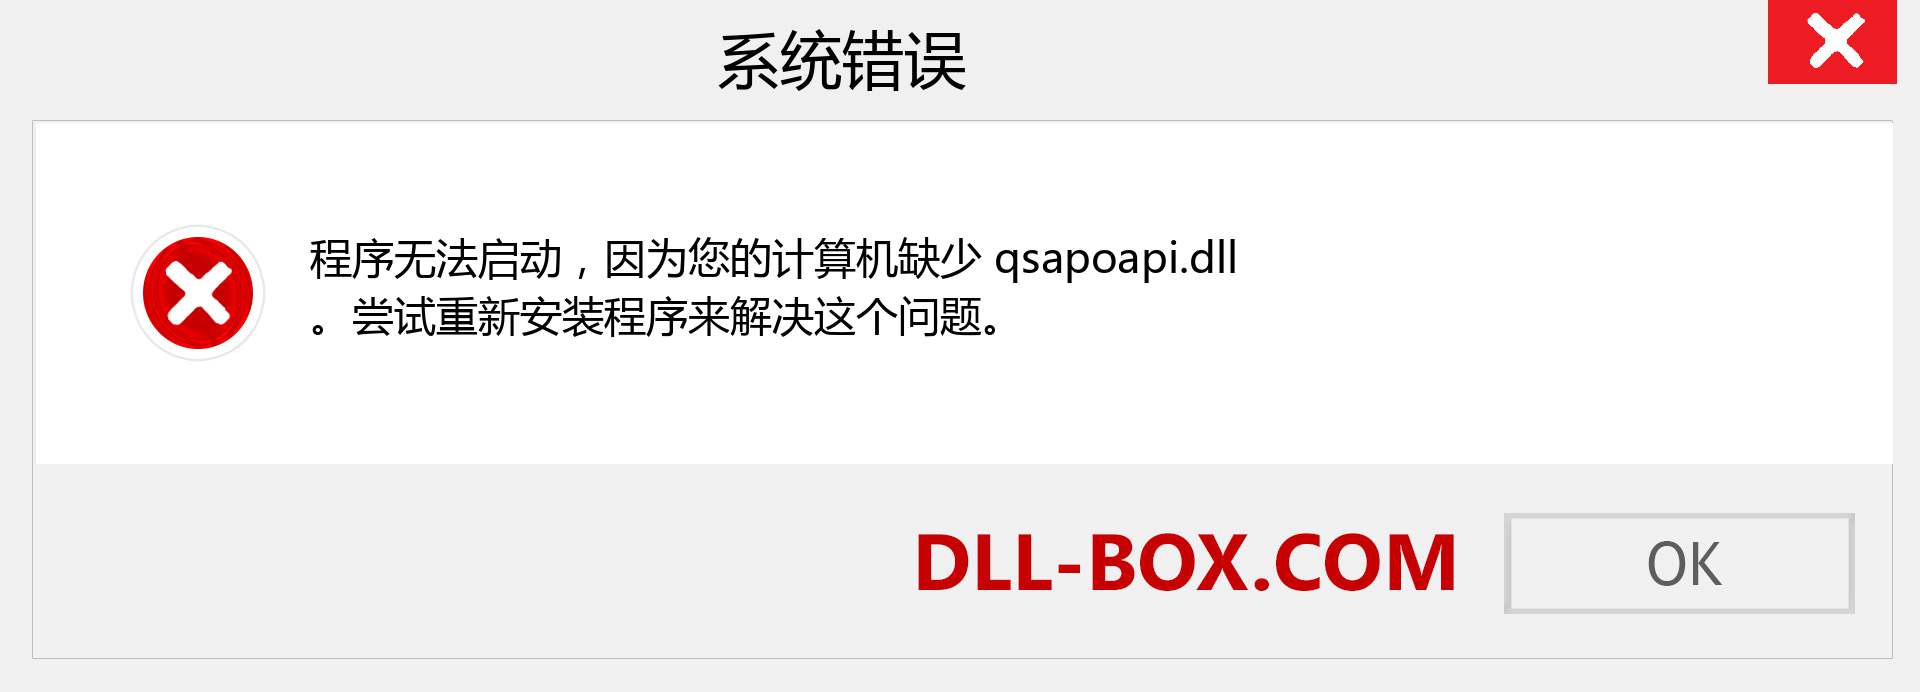 qsapoapi.dll 文件丢失？。 适用于 Windows 7、8、10 的下载 - 修复 Windows、照片、图像上的 qsapoapi dll 丢失错误